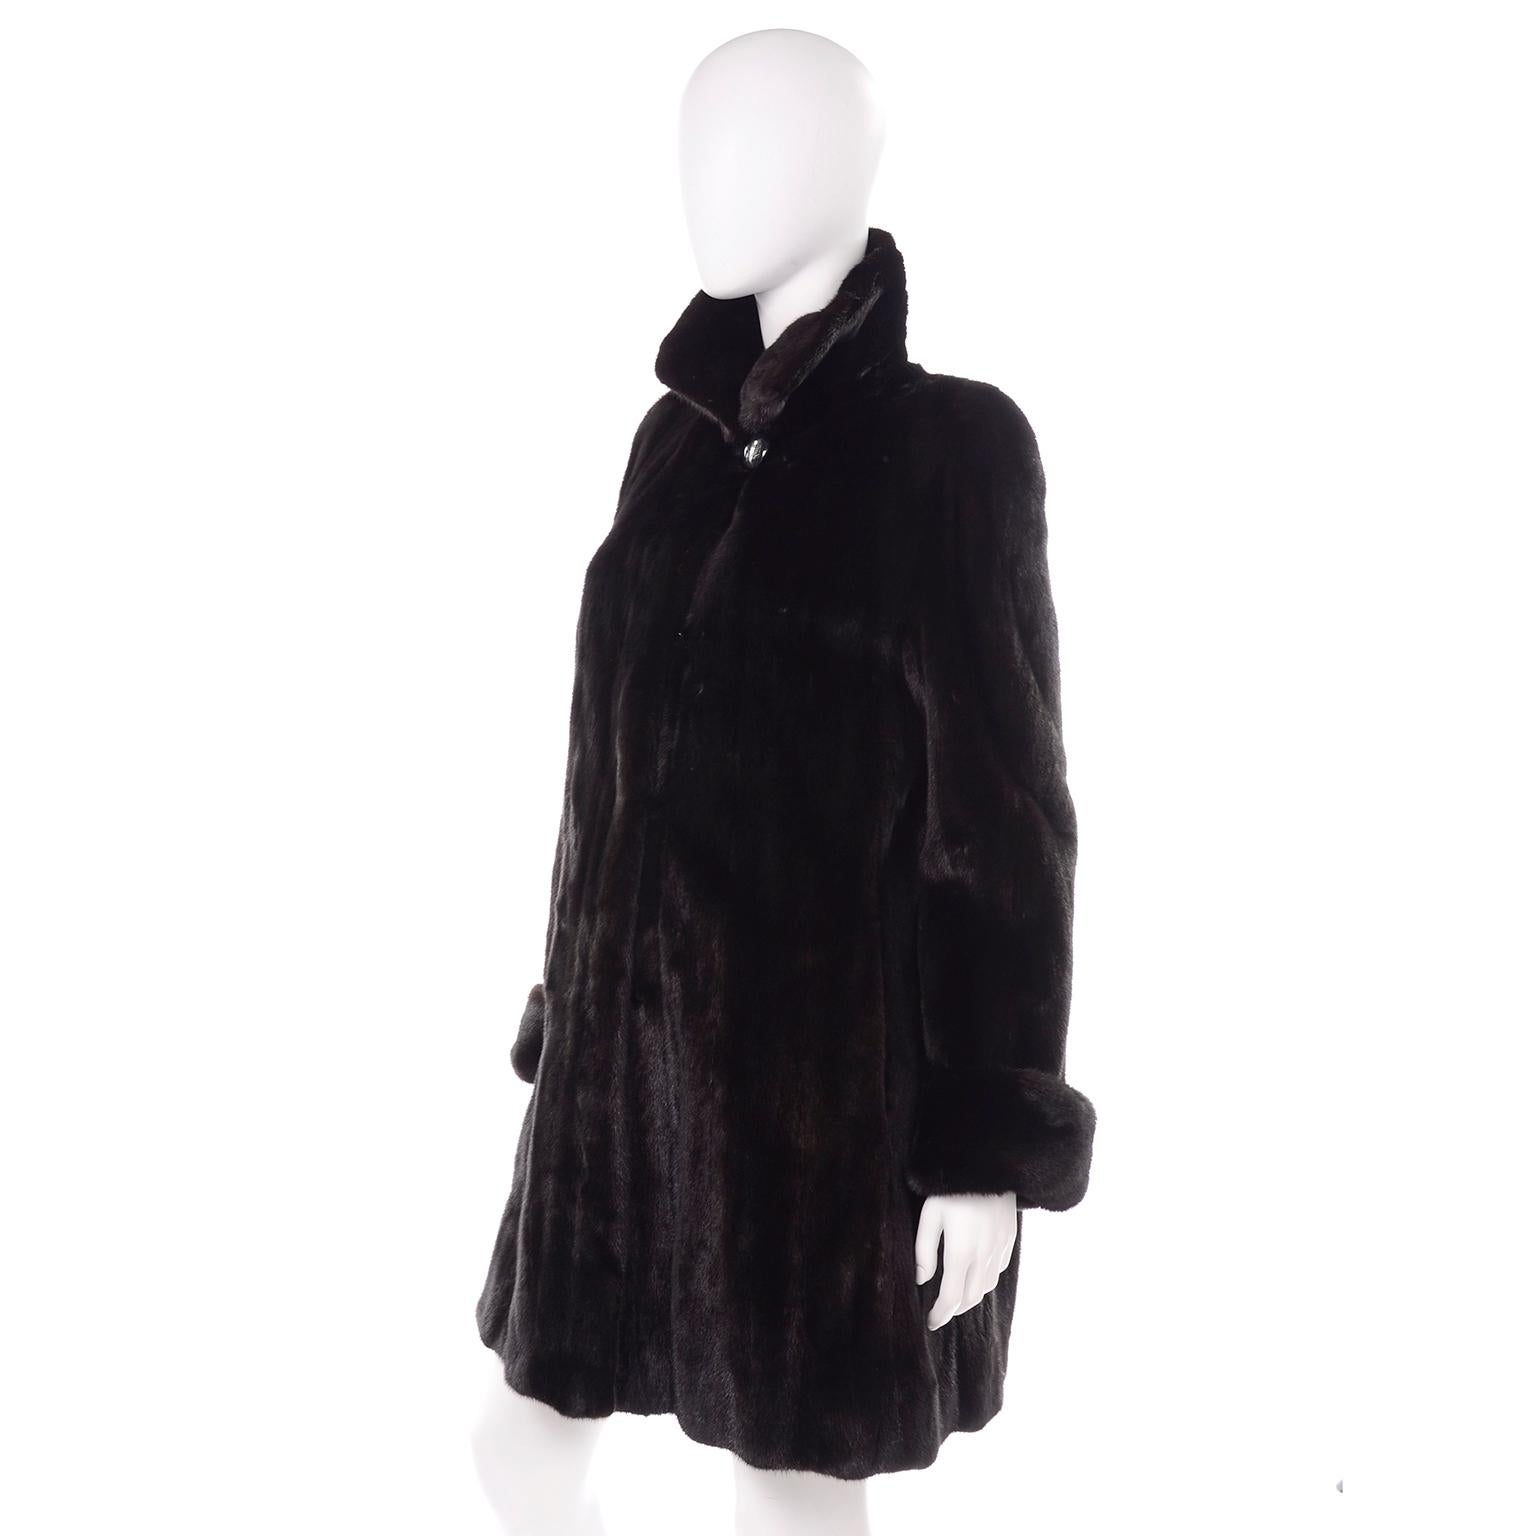 blackglama mink coat vintage